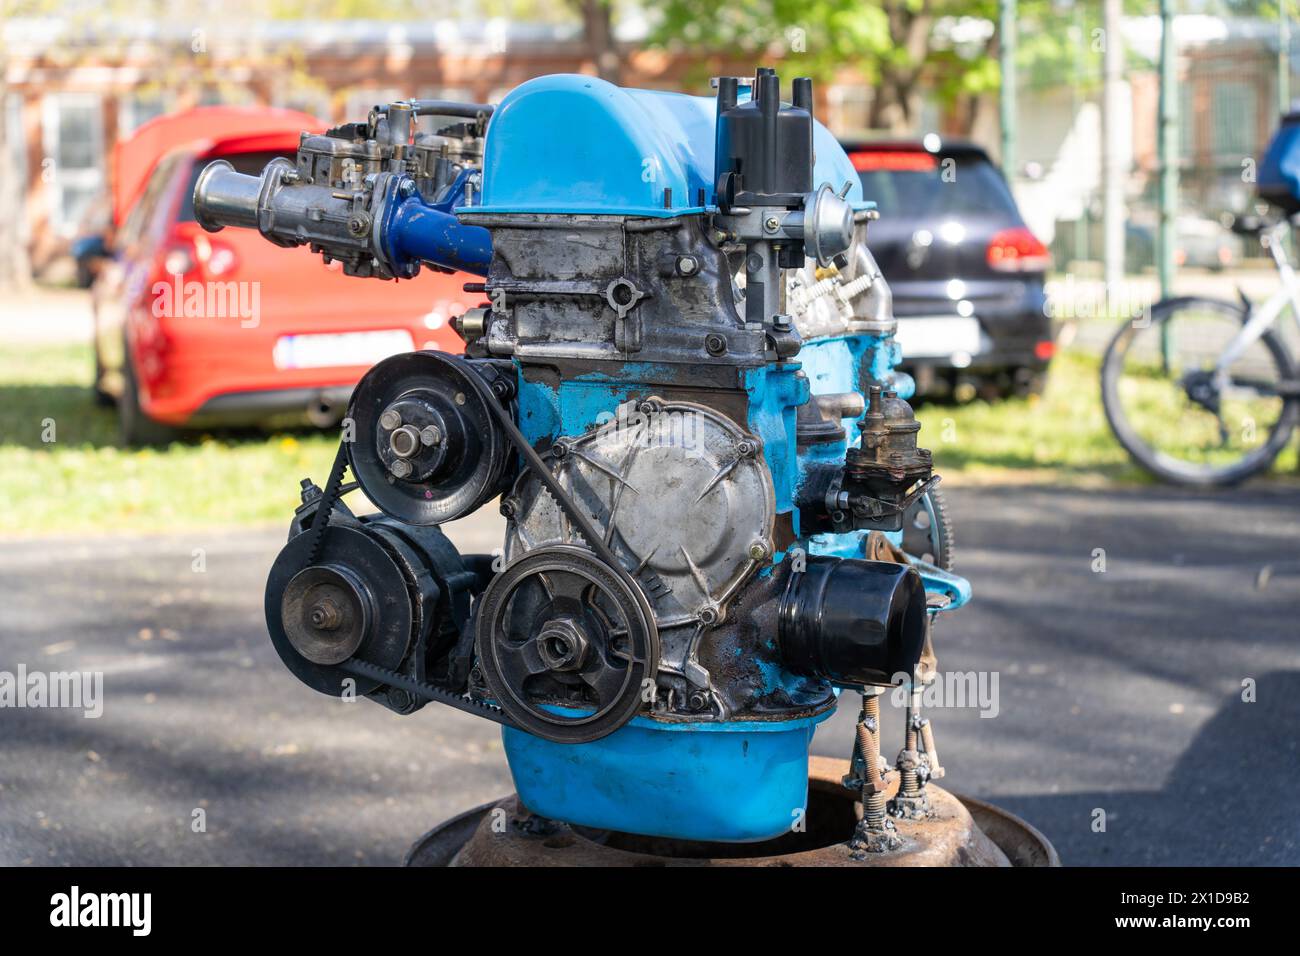 Vieux moteur de voiture hors route démonté peint en bleu Banque D'Images